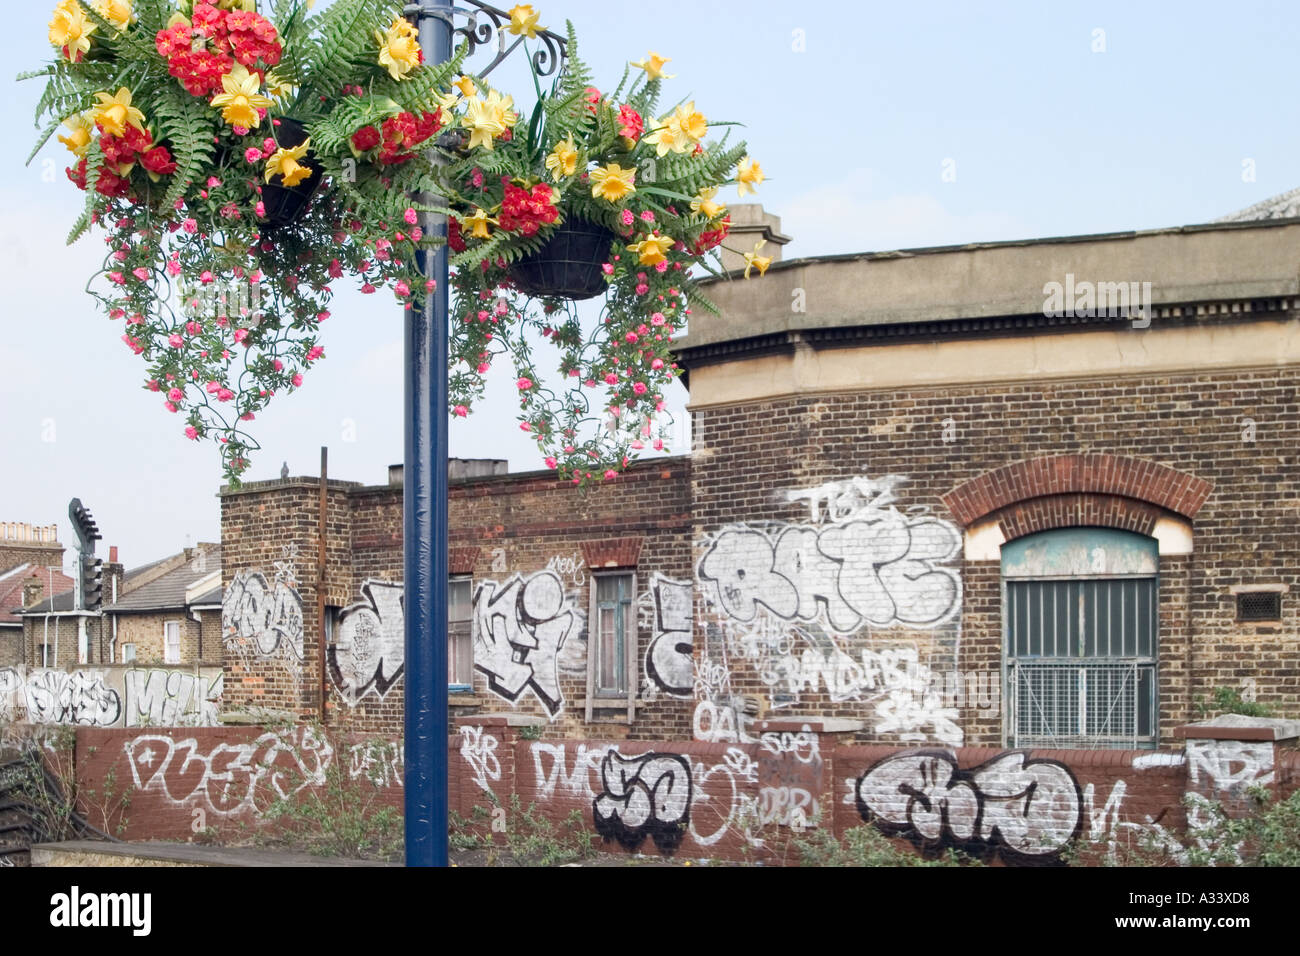 Des fleurs en plastique et de graffitis. Loughborough Junction Station, Londres, Angleterre Banque D'Images